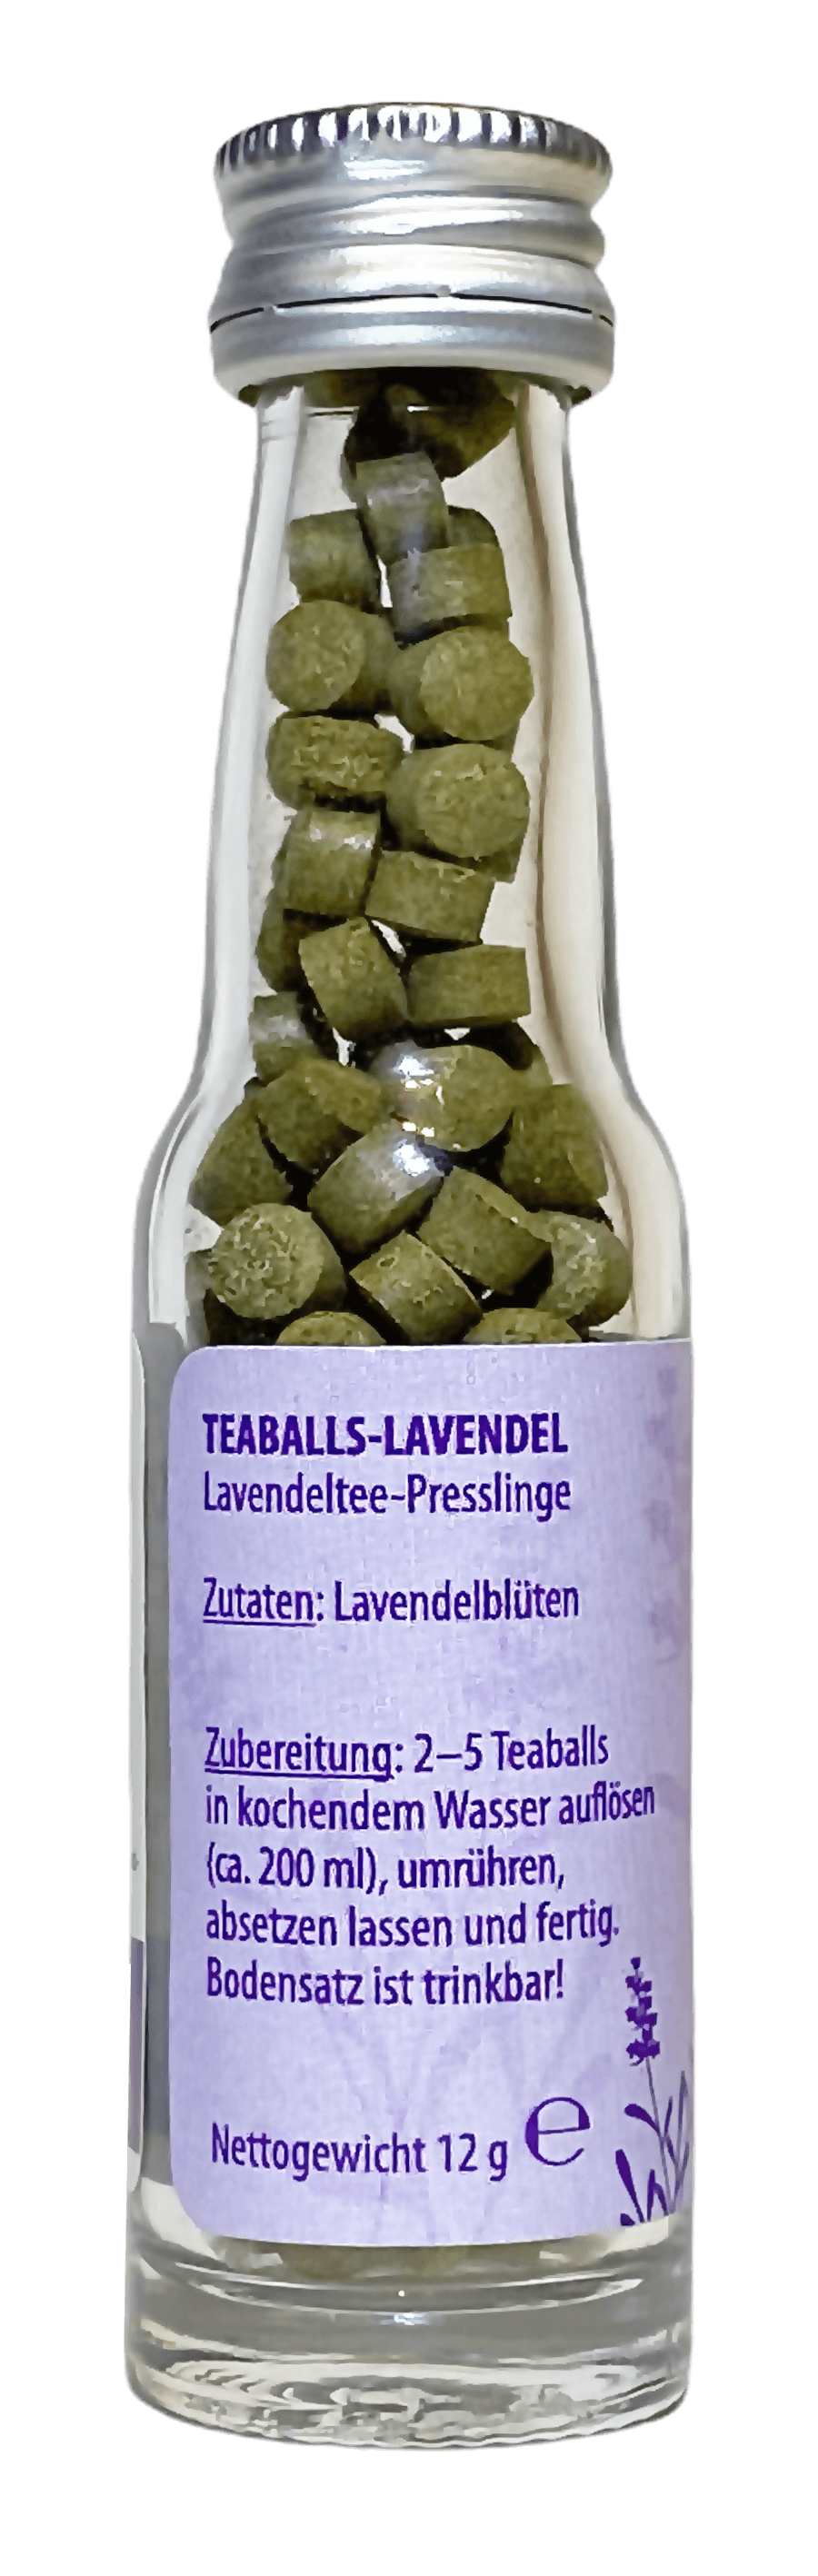 TEABALLS – Lavendel Bio | Naturtrüb | 30-75 Tassen - MYTEACOFFEE.COM | Tee und Kaffee Online bestellen | TEABALLS | BELMIO | DAMATH